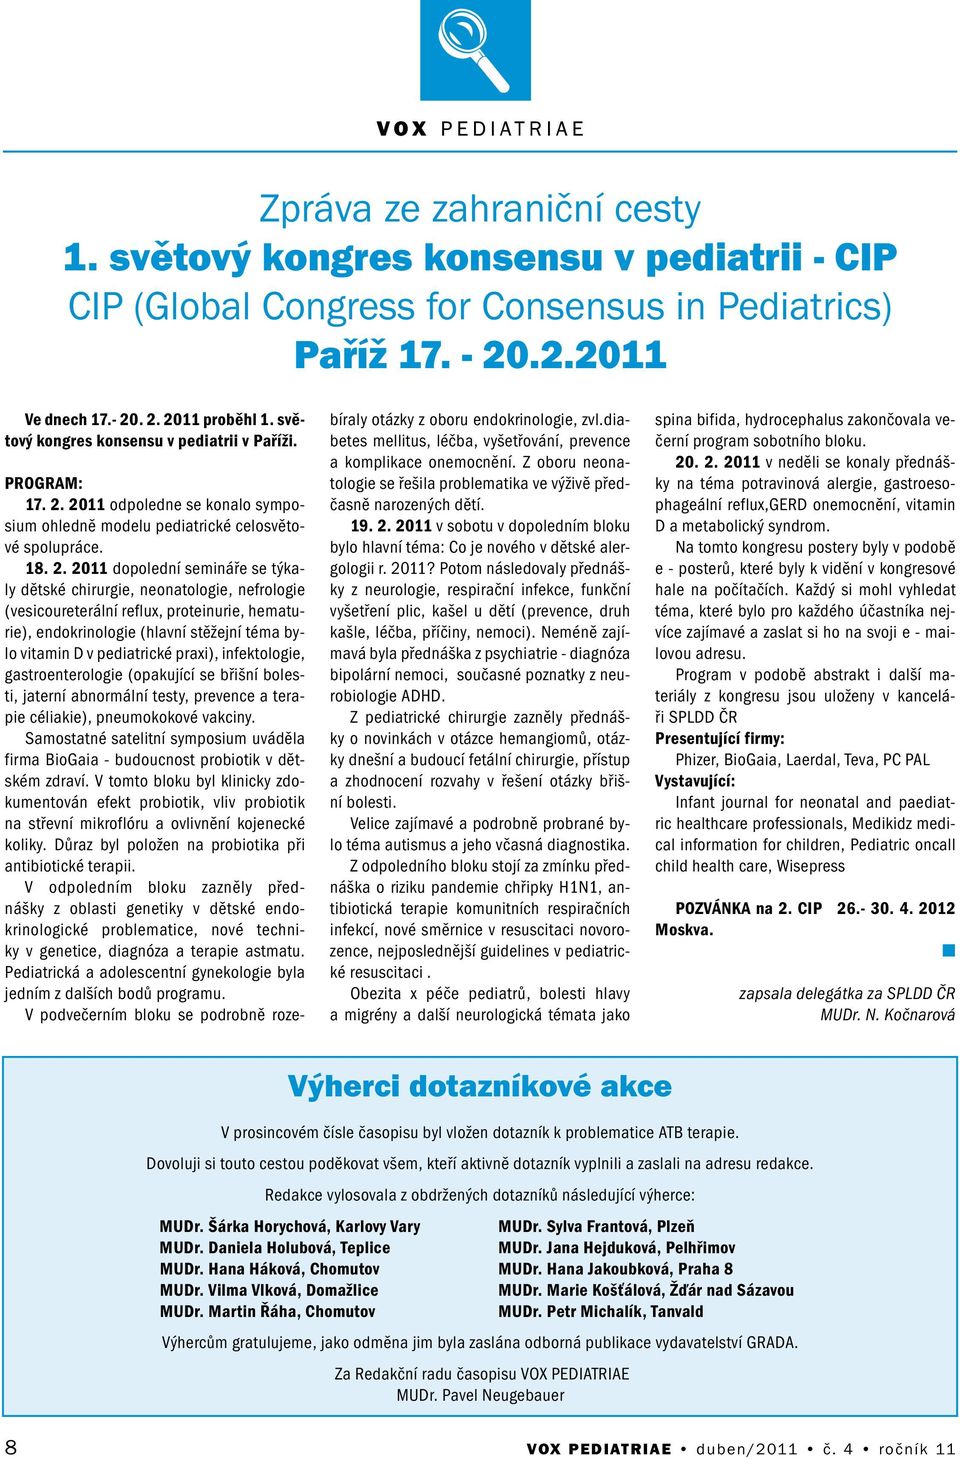 2011 odpolede se koalo symposium ohledě modelu pediatrické celosvětové spolupráce. 18. 2.